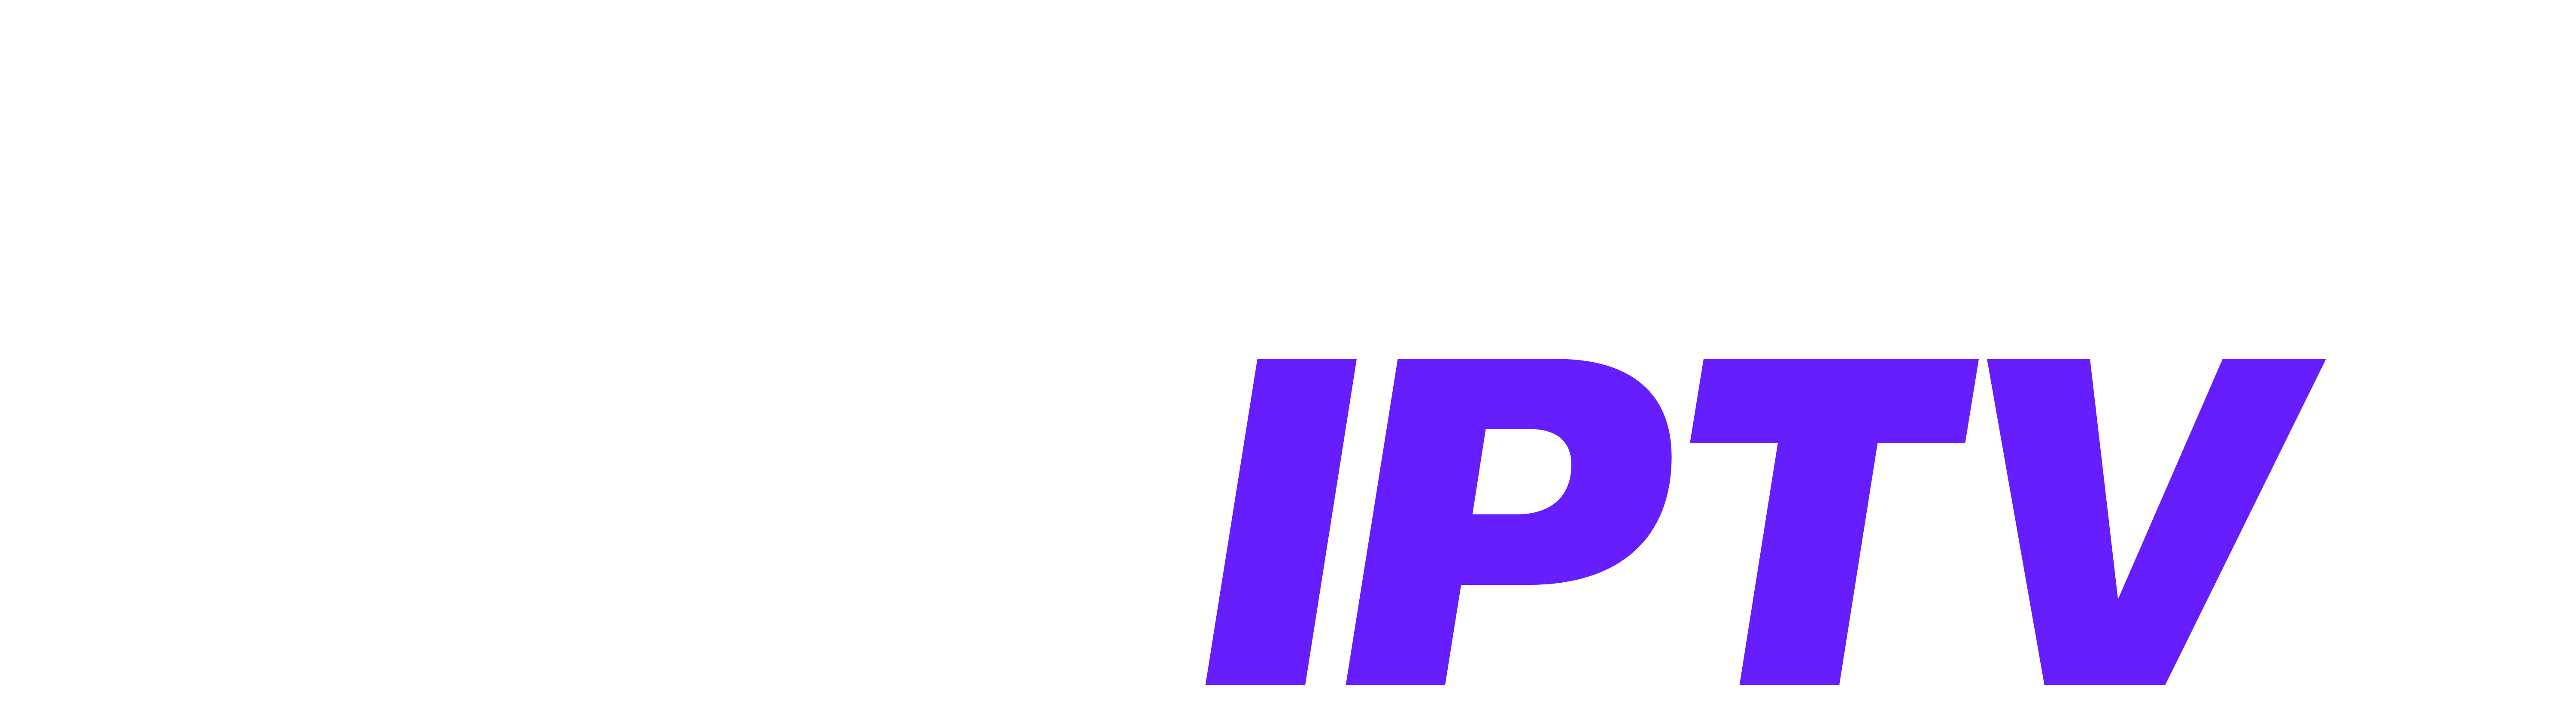 Nextiptv